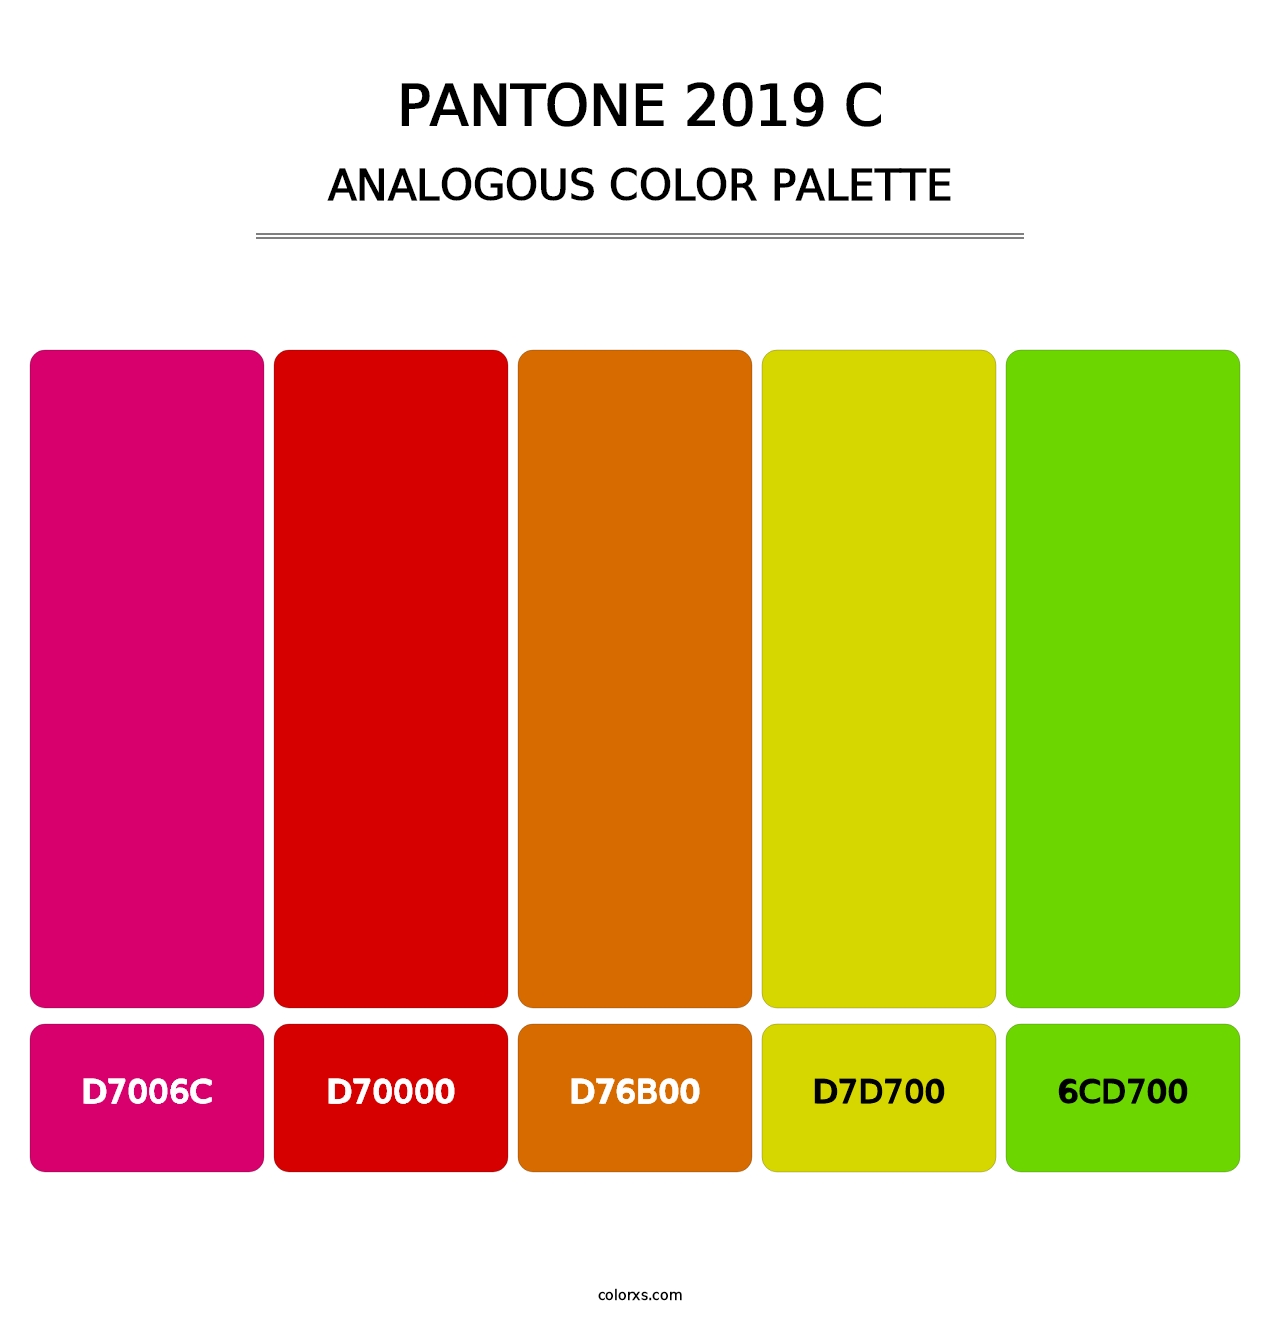 PANTONE 2019 C - Analogous Color Palette